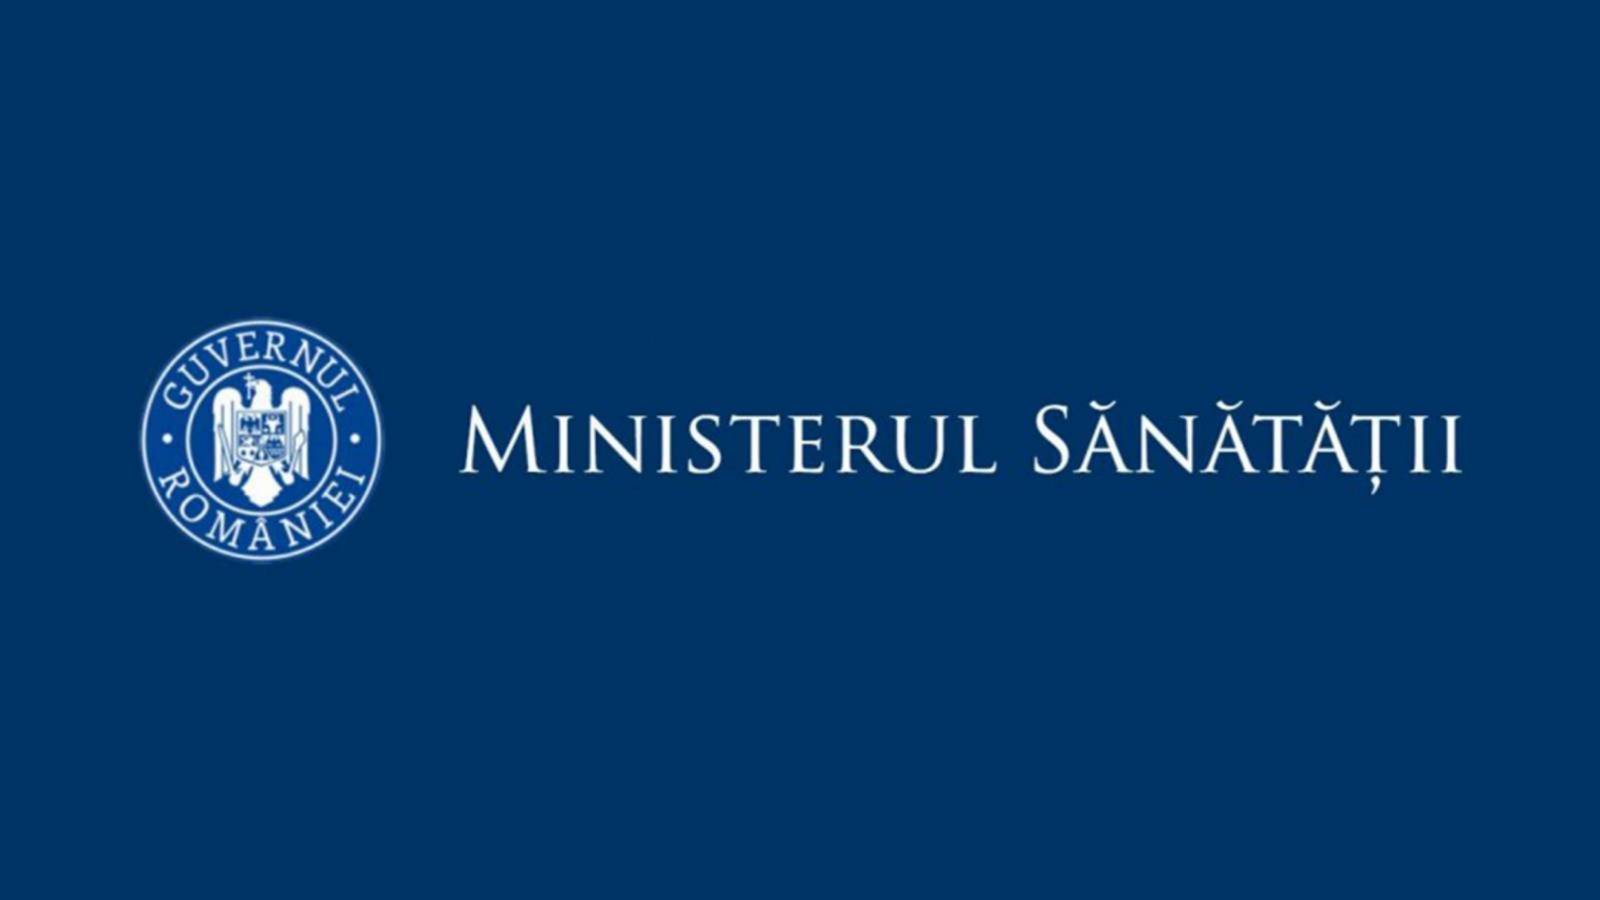 Ministerul Sanatatii Ratele de Incidenta la Coronavirus din Romania pe 6 Aprilie 2021